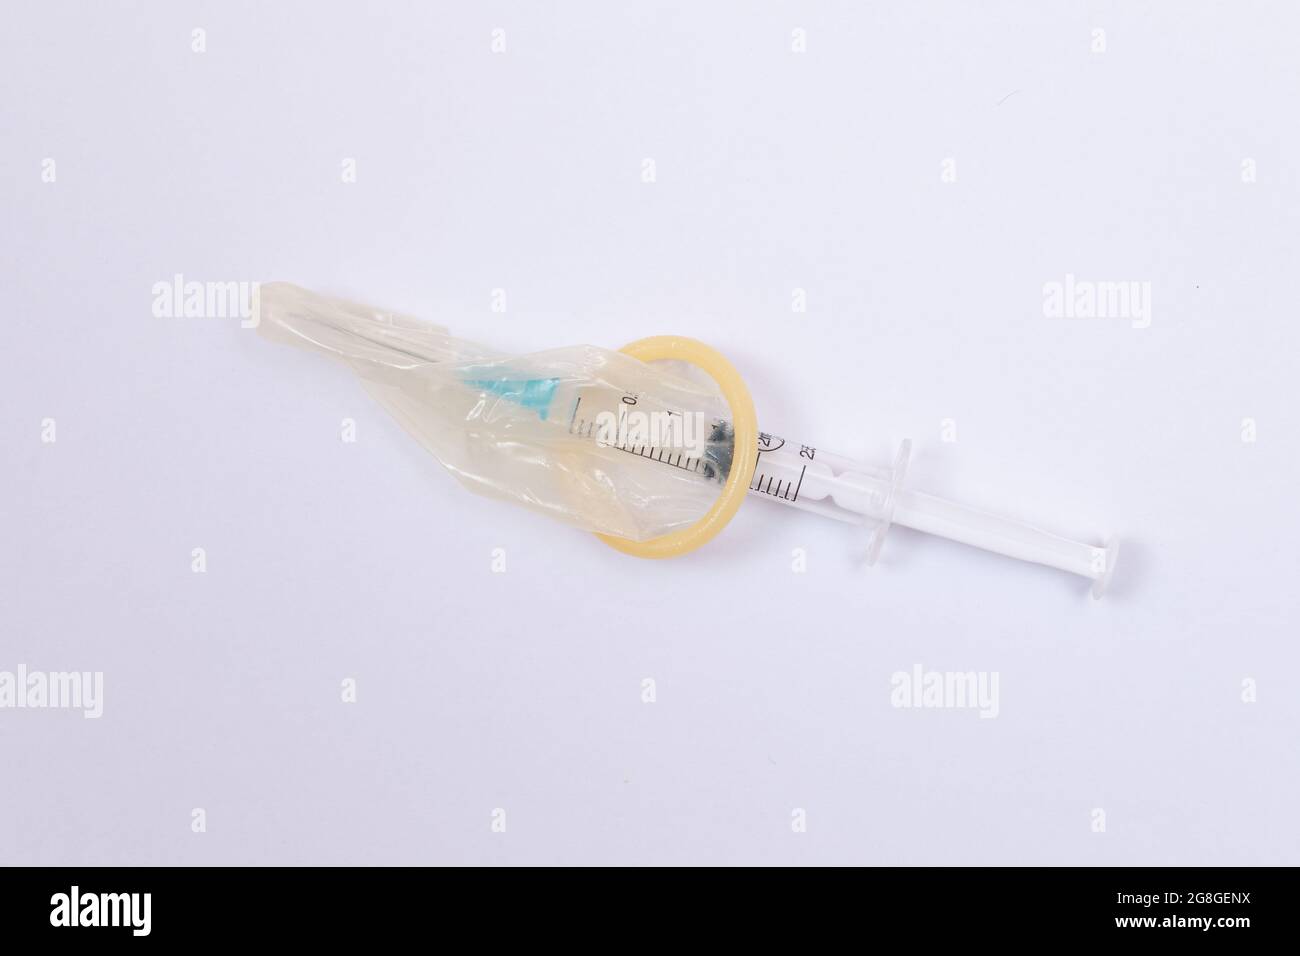 Concept de vaccin sûr et anti-vaccination - seringue dans un condom sur une table blanche. Méfiance à l'égard de la vaccination. Immunité naturelle. Scepticisme à propos du vaccin. Liberté et droits de l'homme Banque D'Images